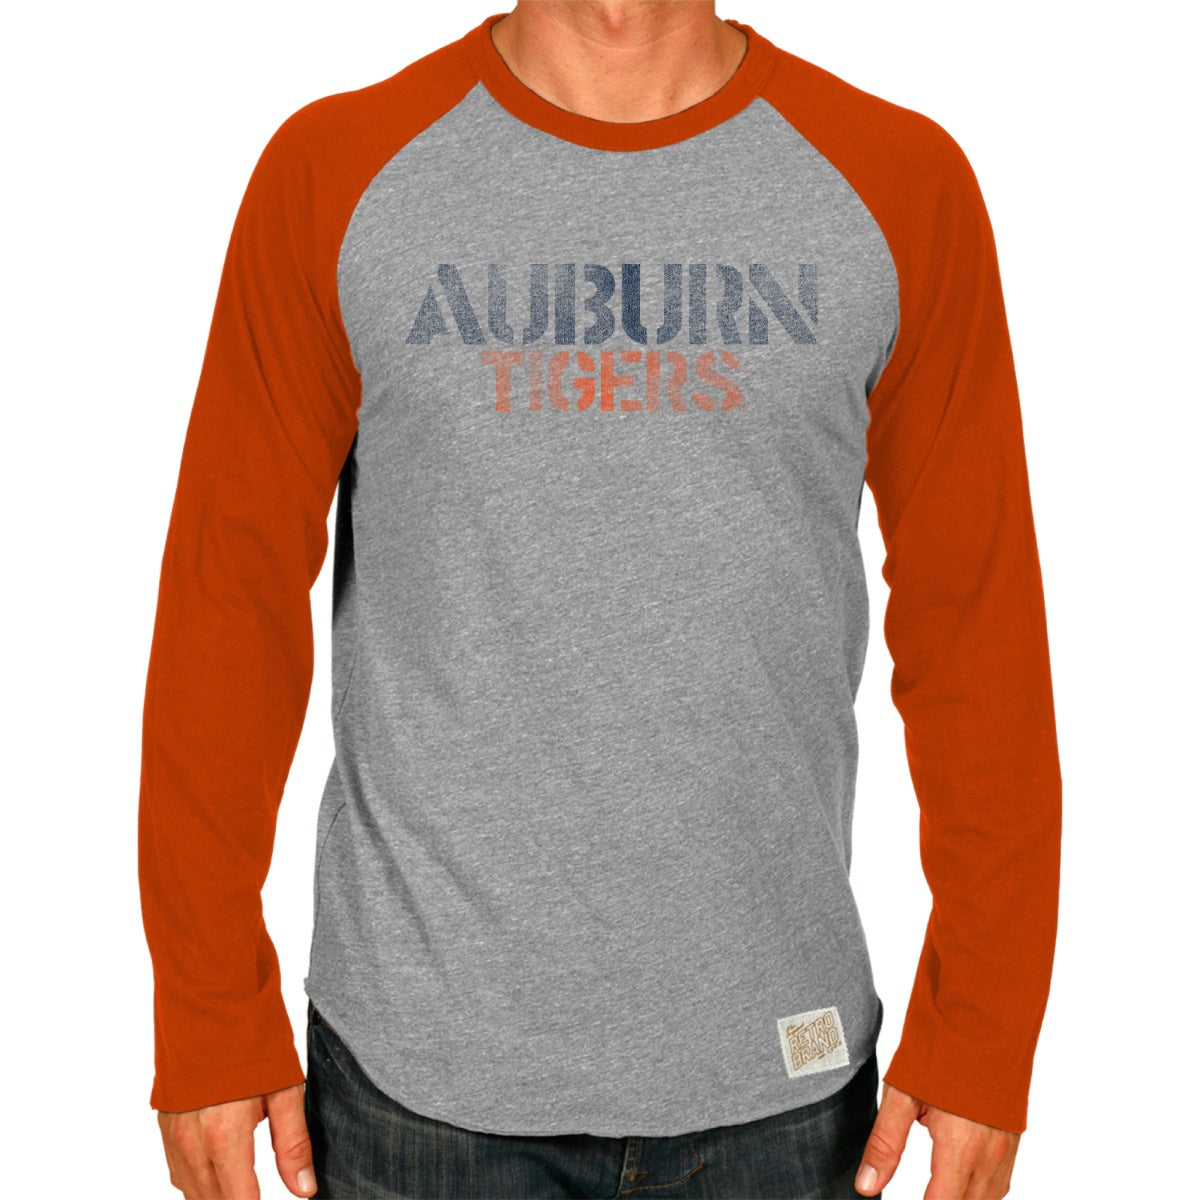 Auburn Tigers Tri-Blend Unisex Contrast Raglan